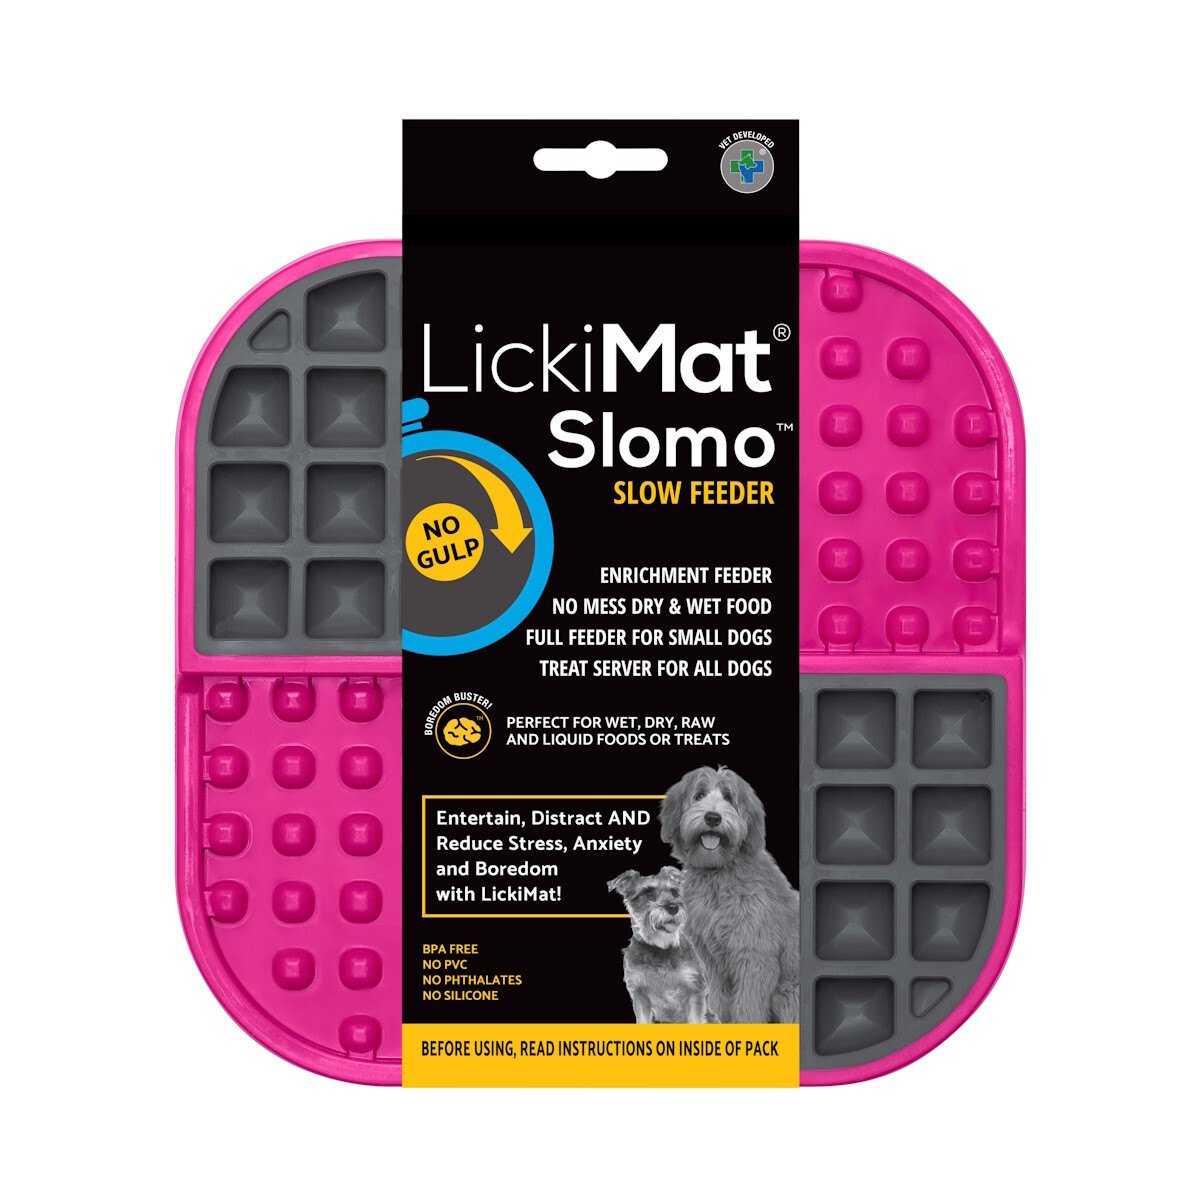 LickiMat Slomo Wet & Dry Double Slow Food Dog Bowl image 1